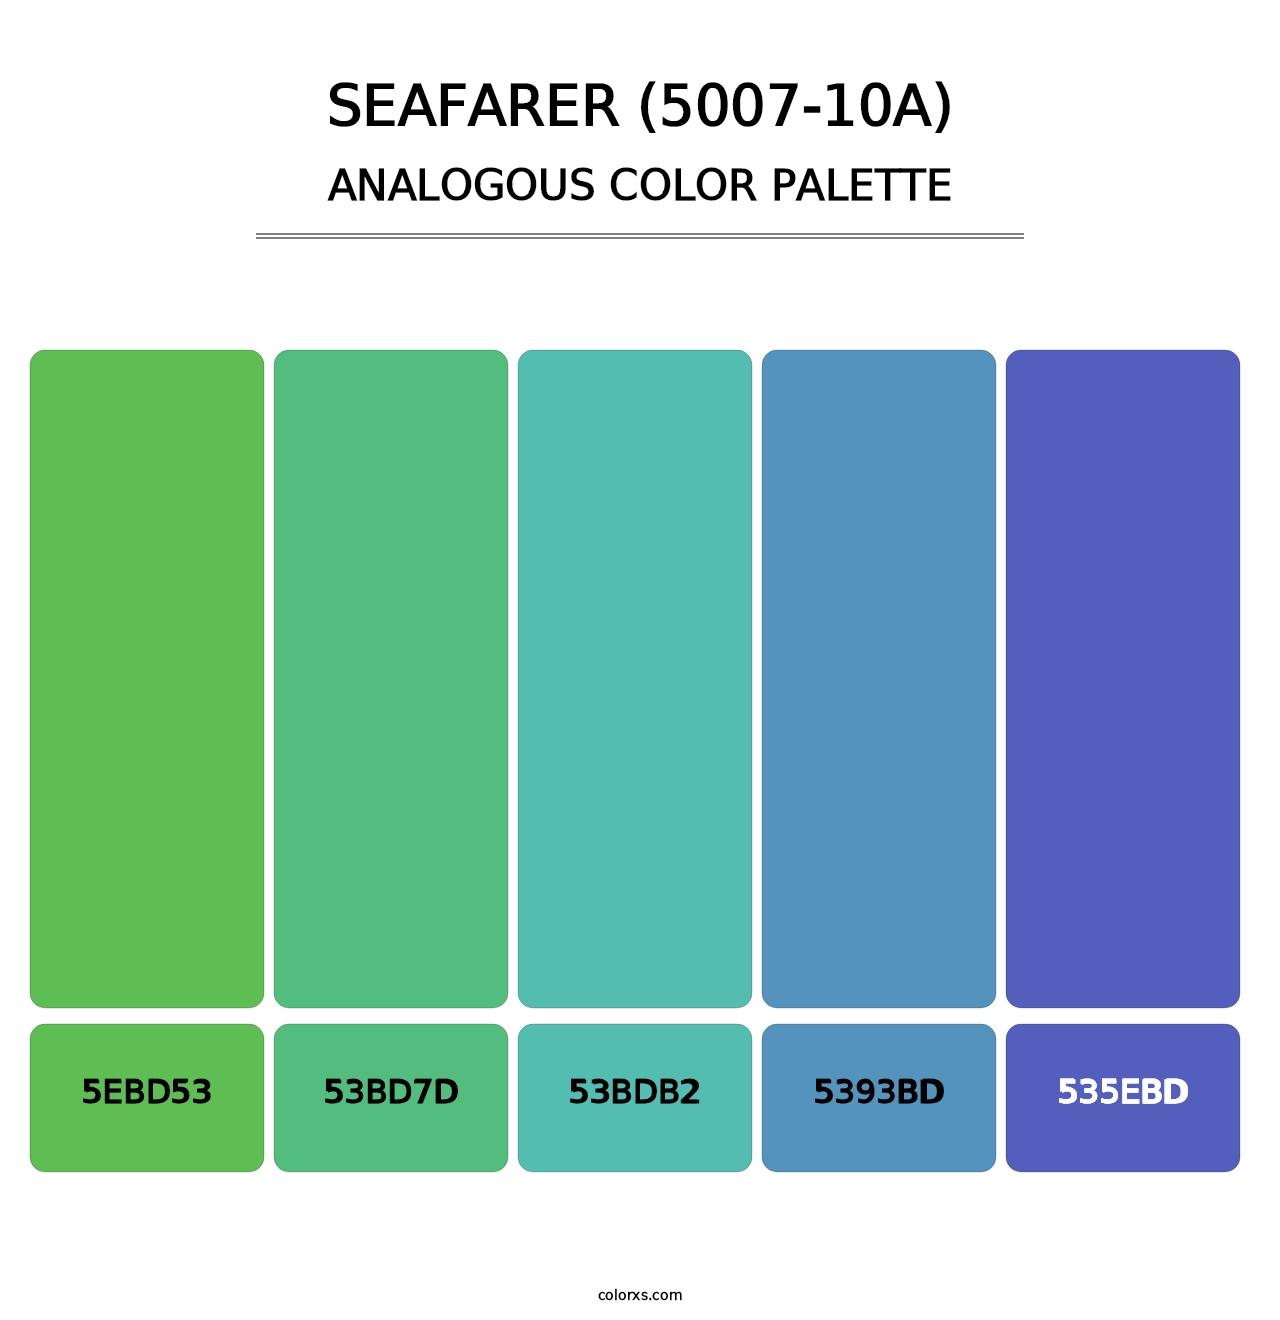 Seafarer (5007-10A) - Analogous Color Palette